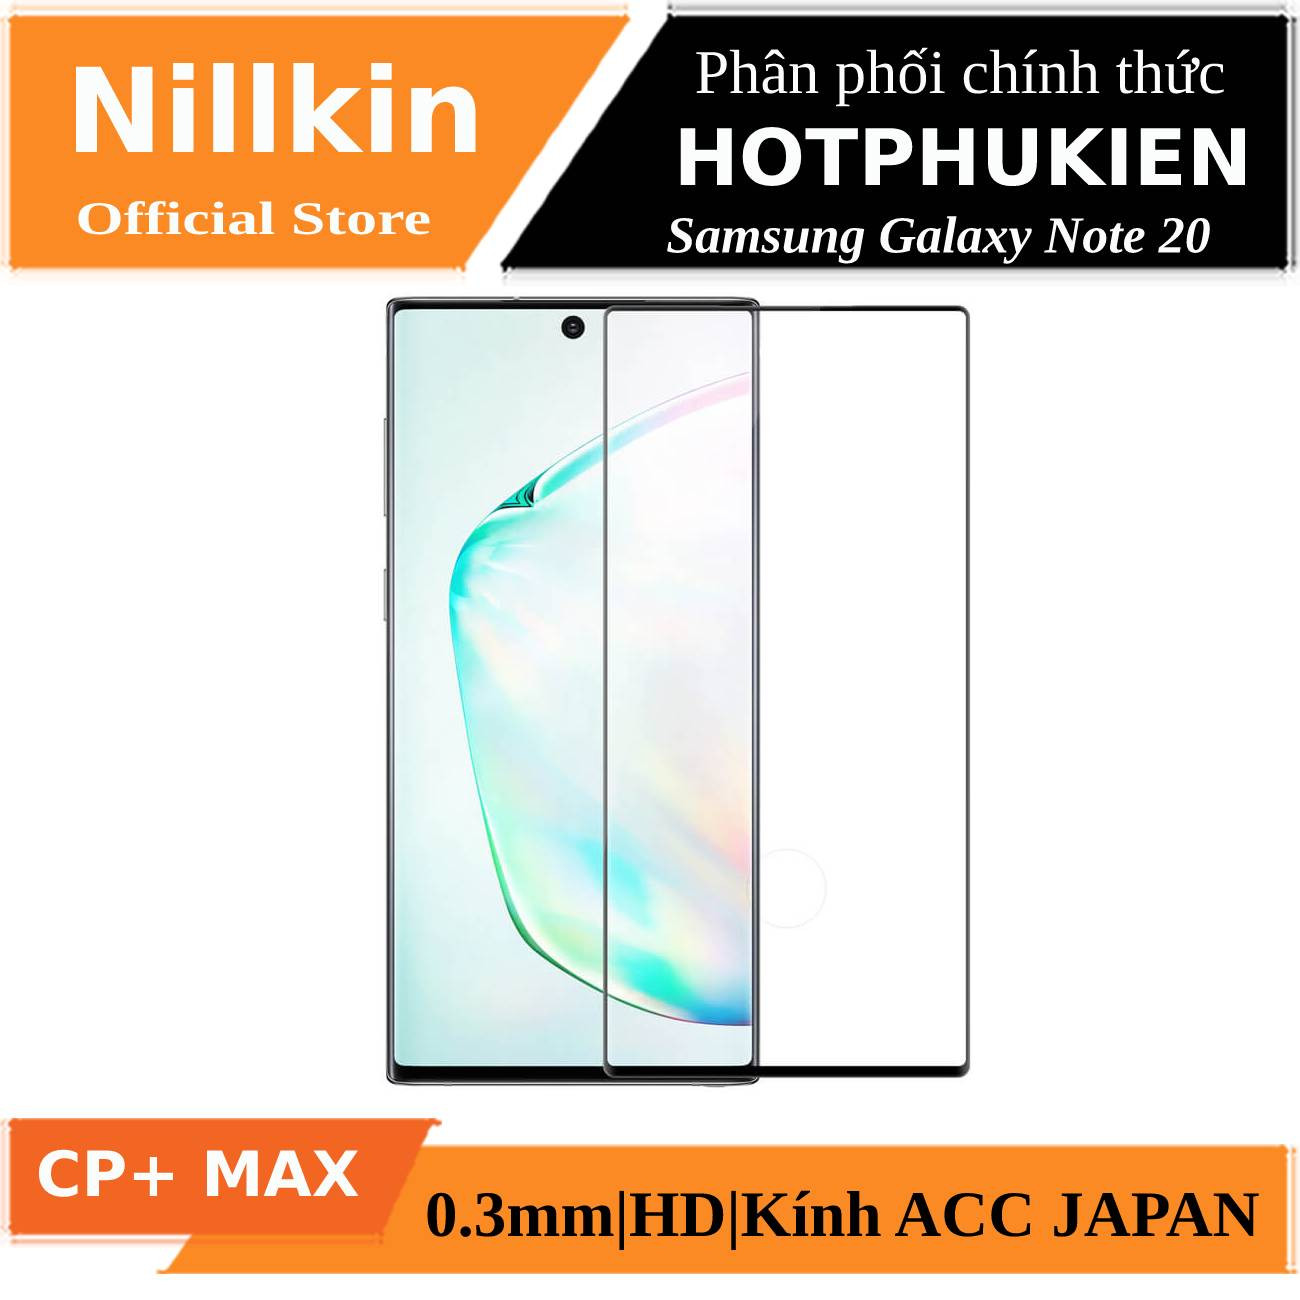 Miếng dán kính cường lực full 3D cho Samsung Galaxy Note 20 hiệu Nillkin CP+ Max